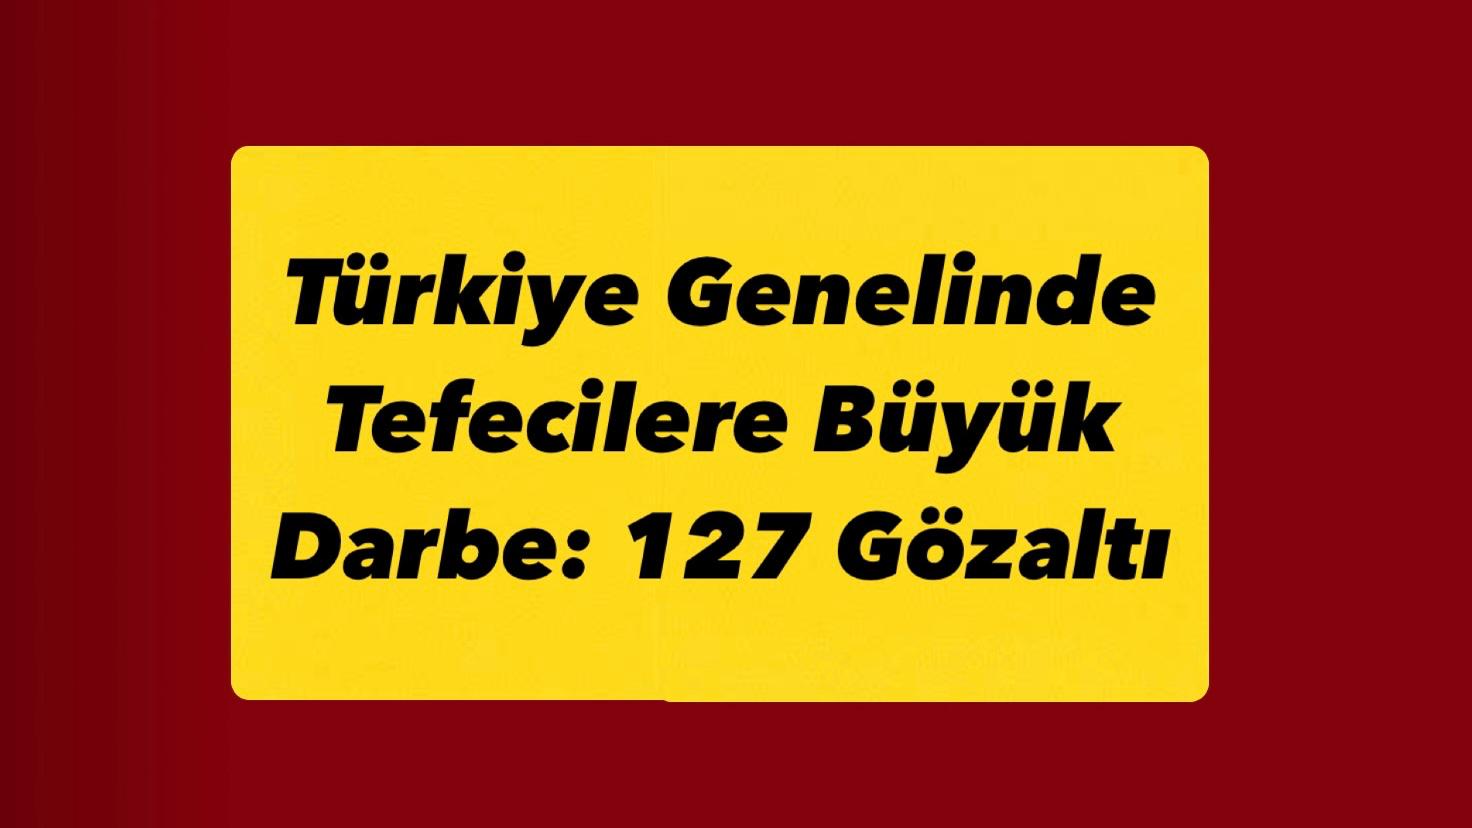 Türkiye Genelinde Tefecilere Büyük Darbe: 127 Gözaltı